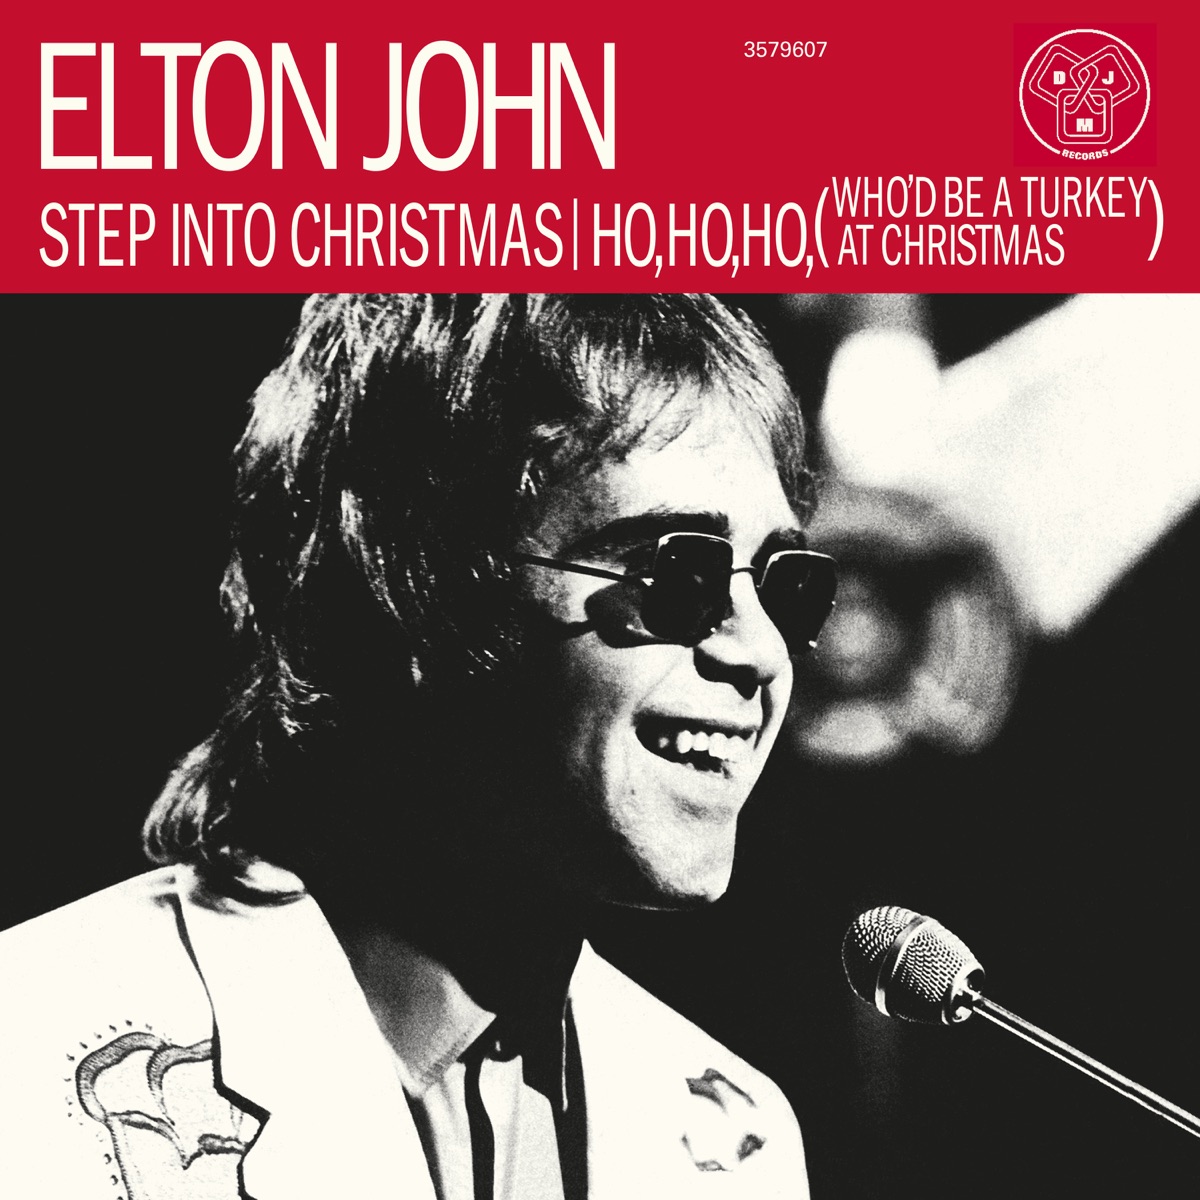 lunken Udholde Tilbageholde Step Into Christmas - EP - Album by Elton John - Apple Music